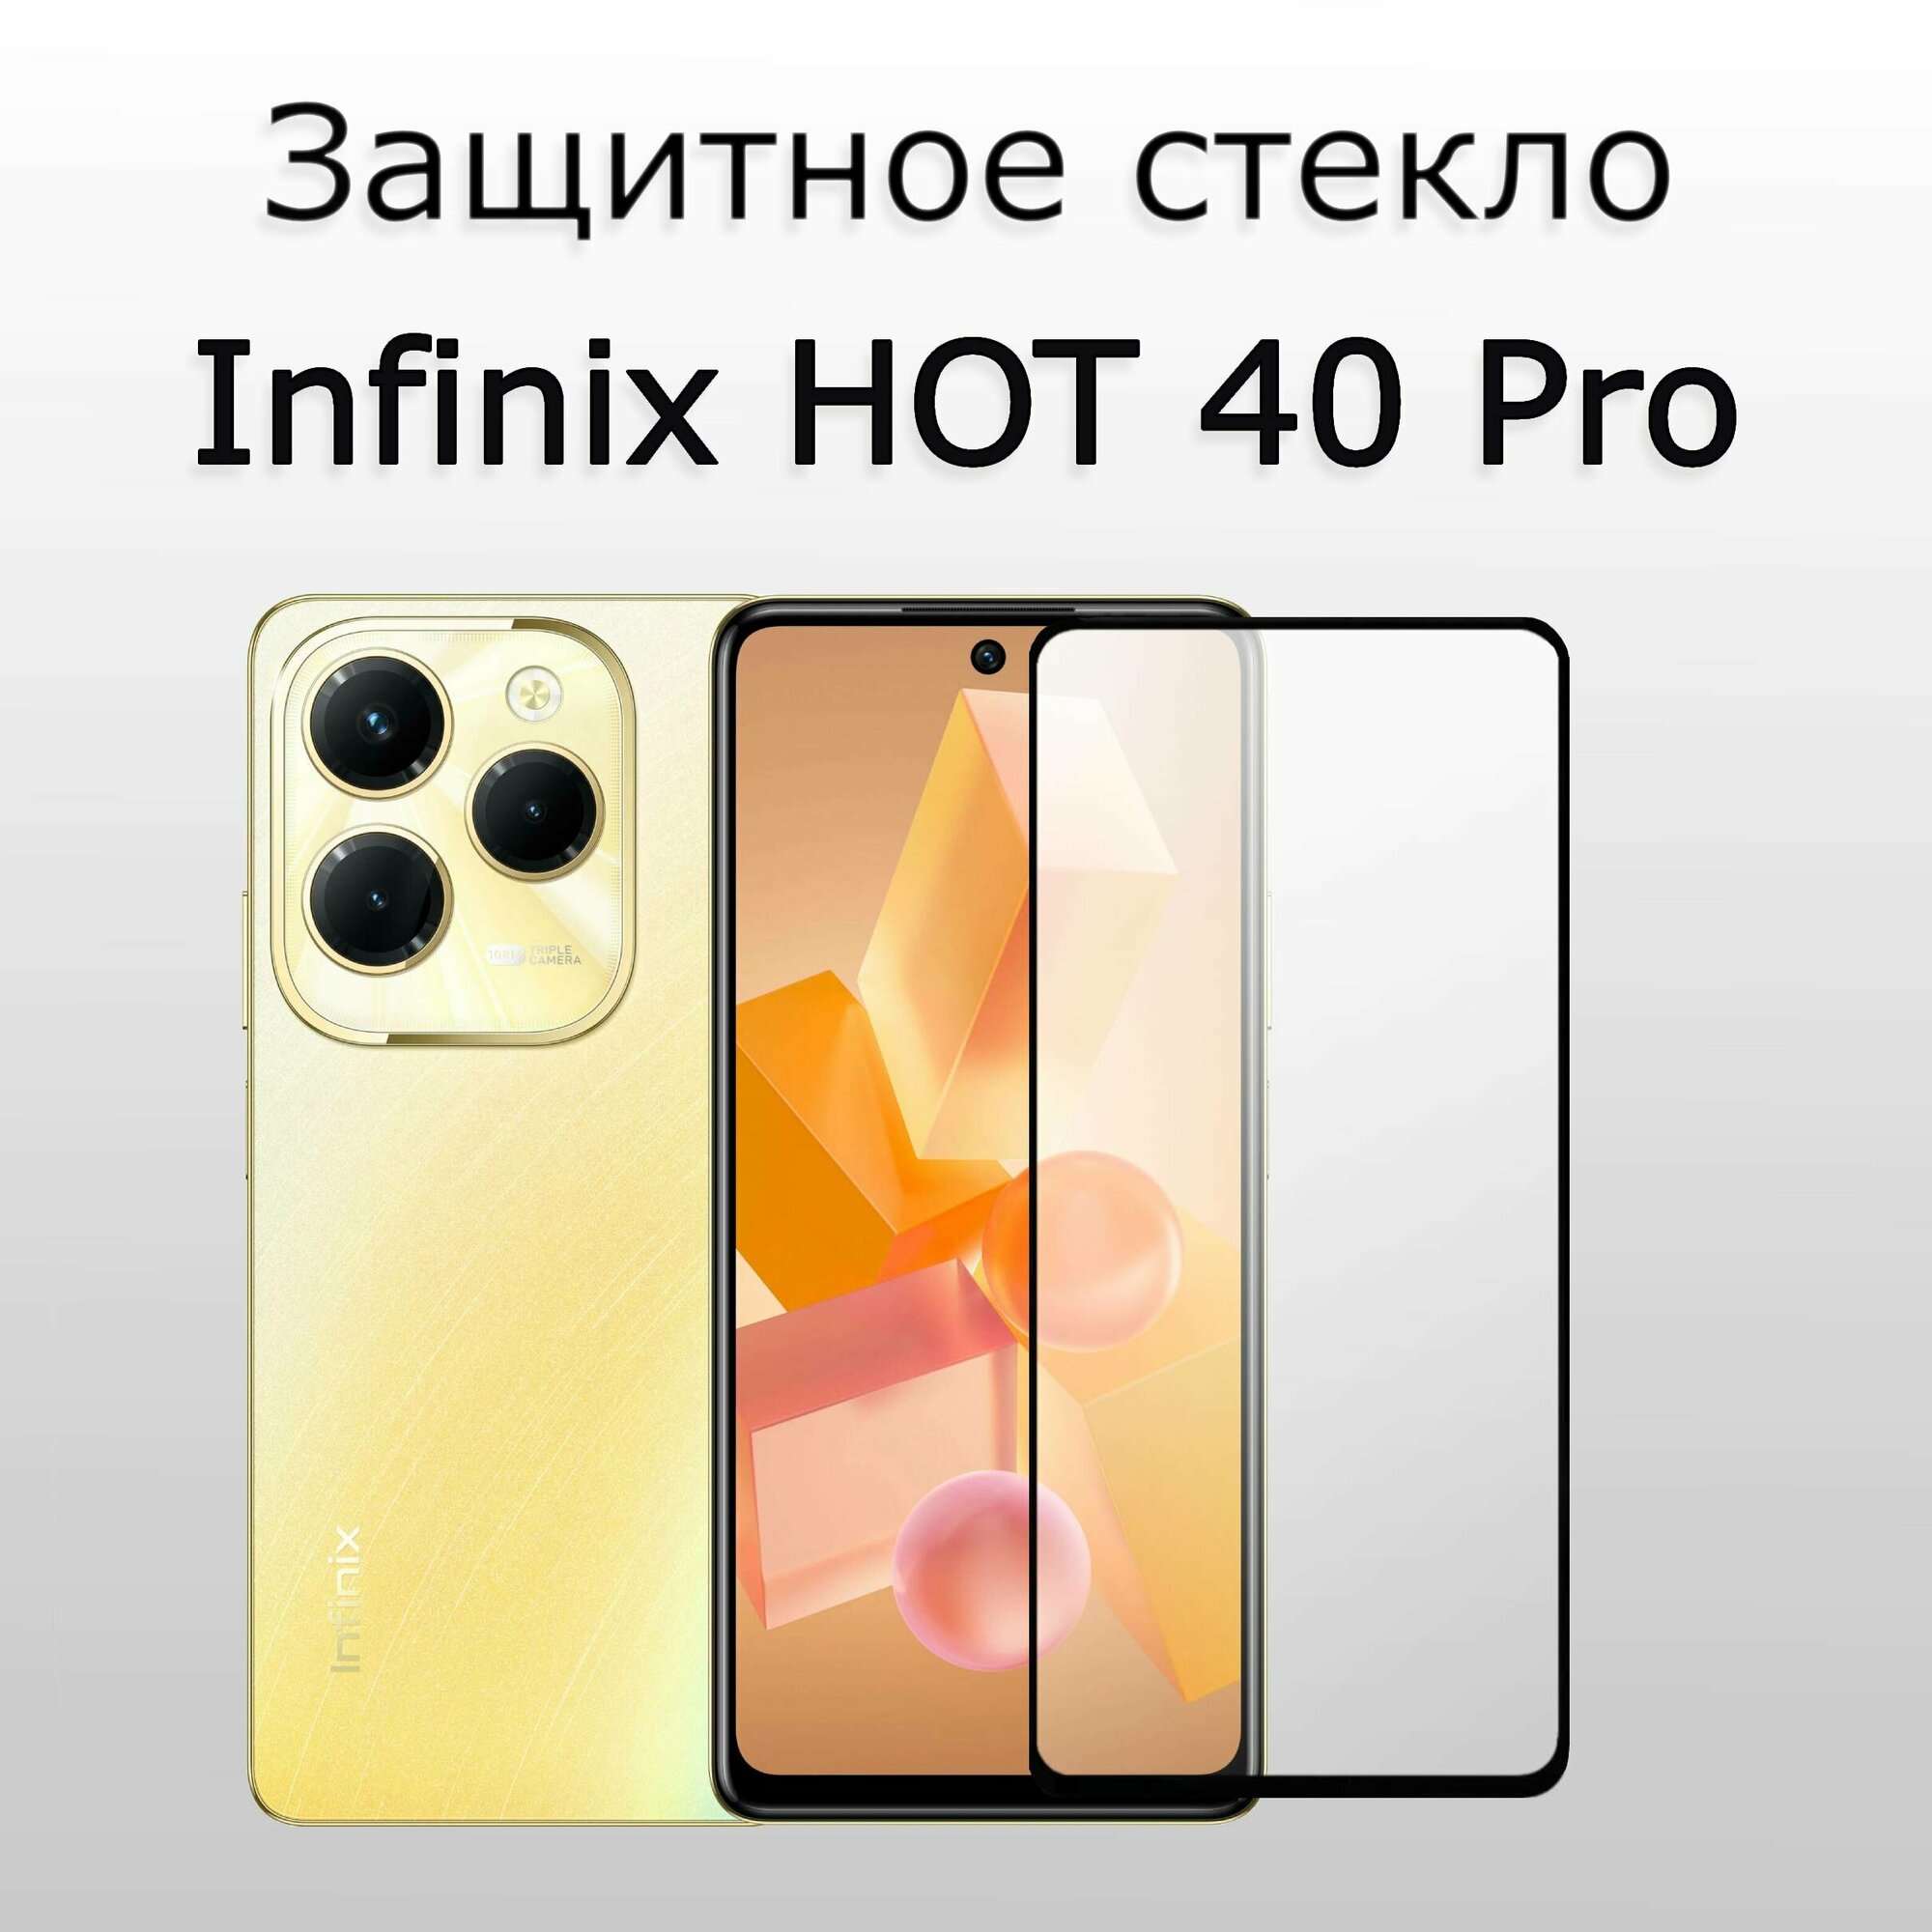 Стекло защитное для Infinix HOT 40 Pro